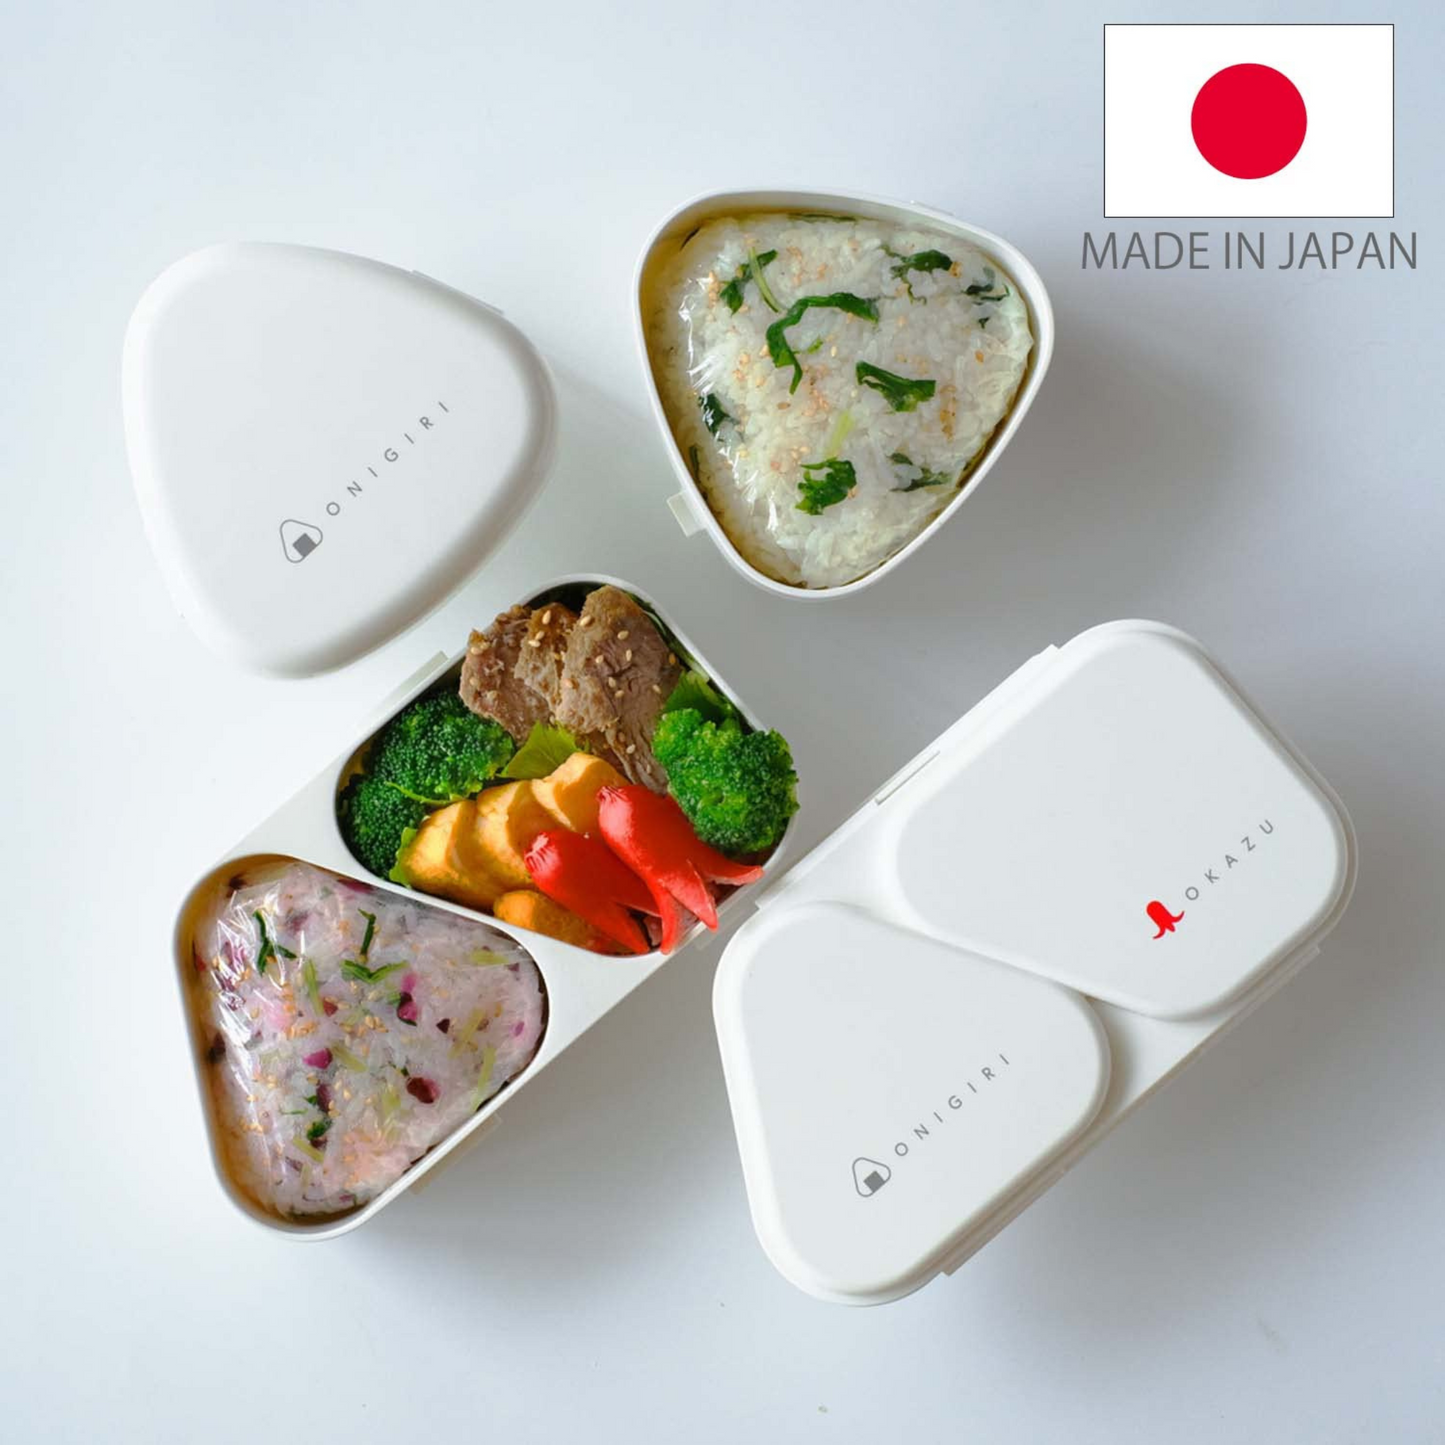 Onigiri Maker Lunch Case | White